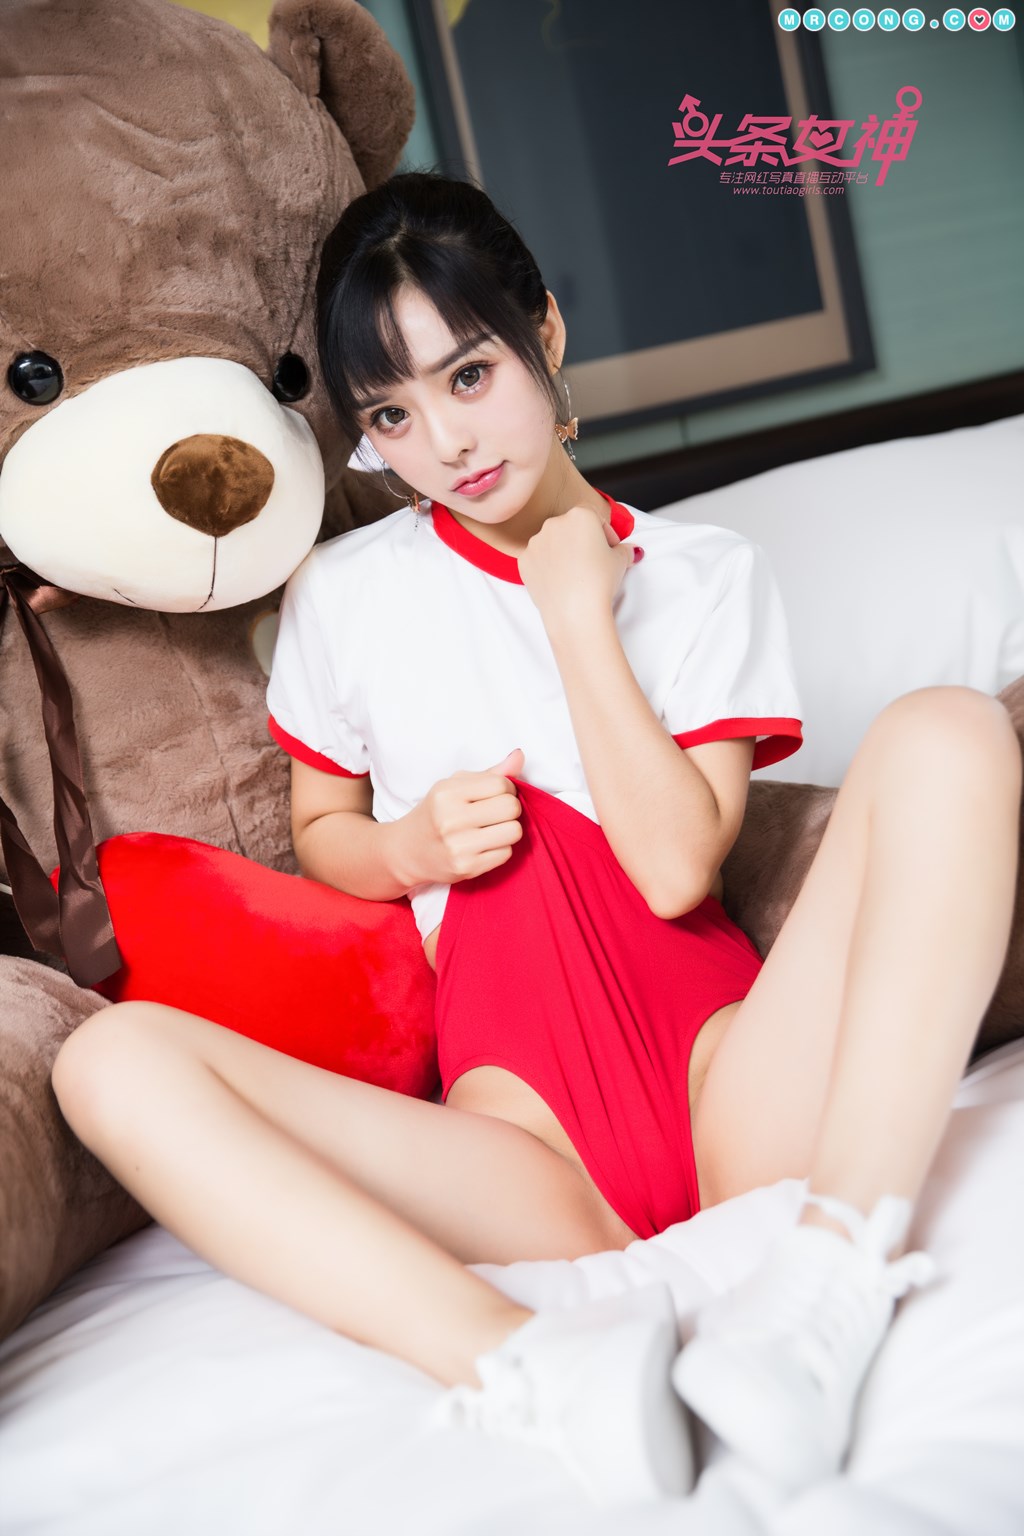 TouTiao 2017-11-04: Model Zhou Xi Yan (周 熙 妍) (11 photos) photo 1-6